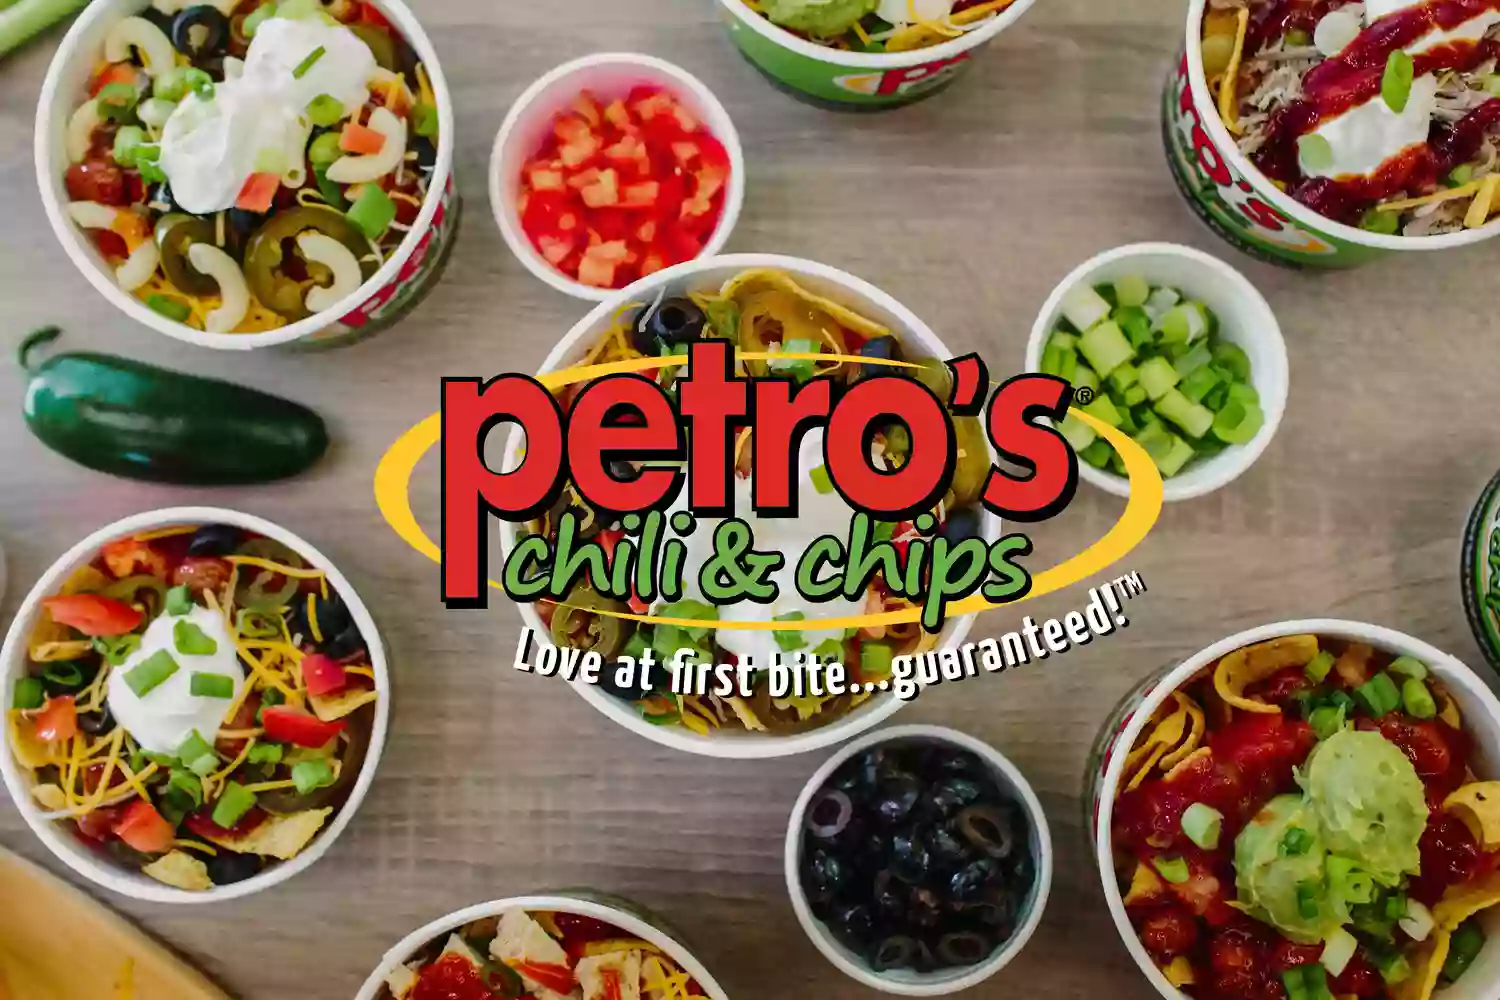 Petro's Chili & Chips - Clinton